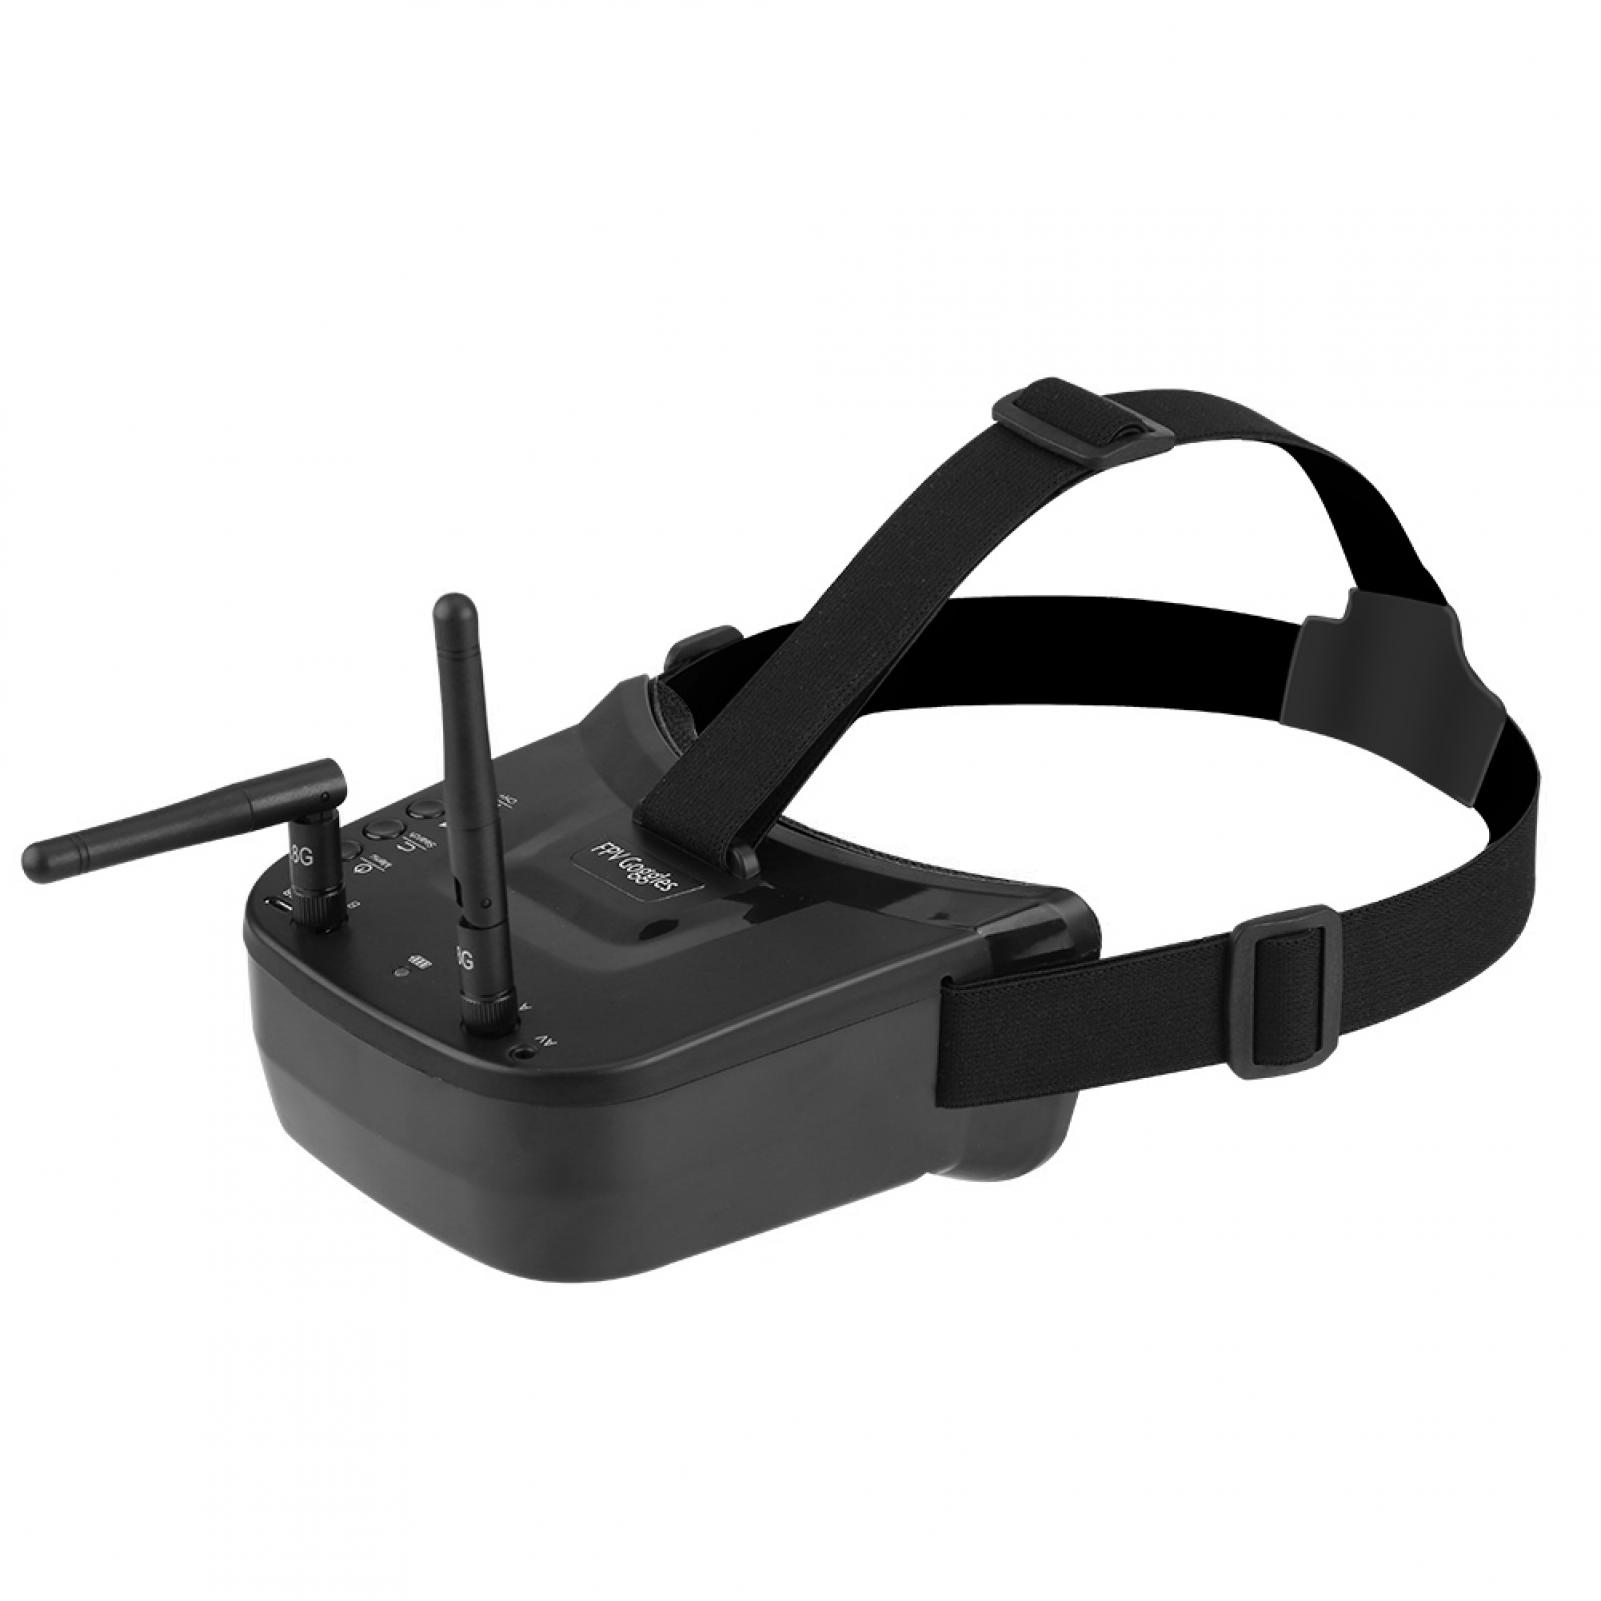 Mini FPV Goggles for Quadcopter